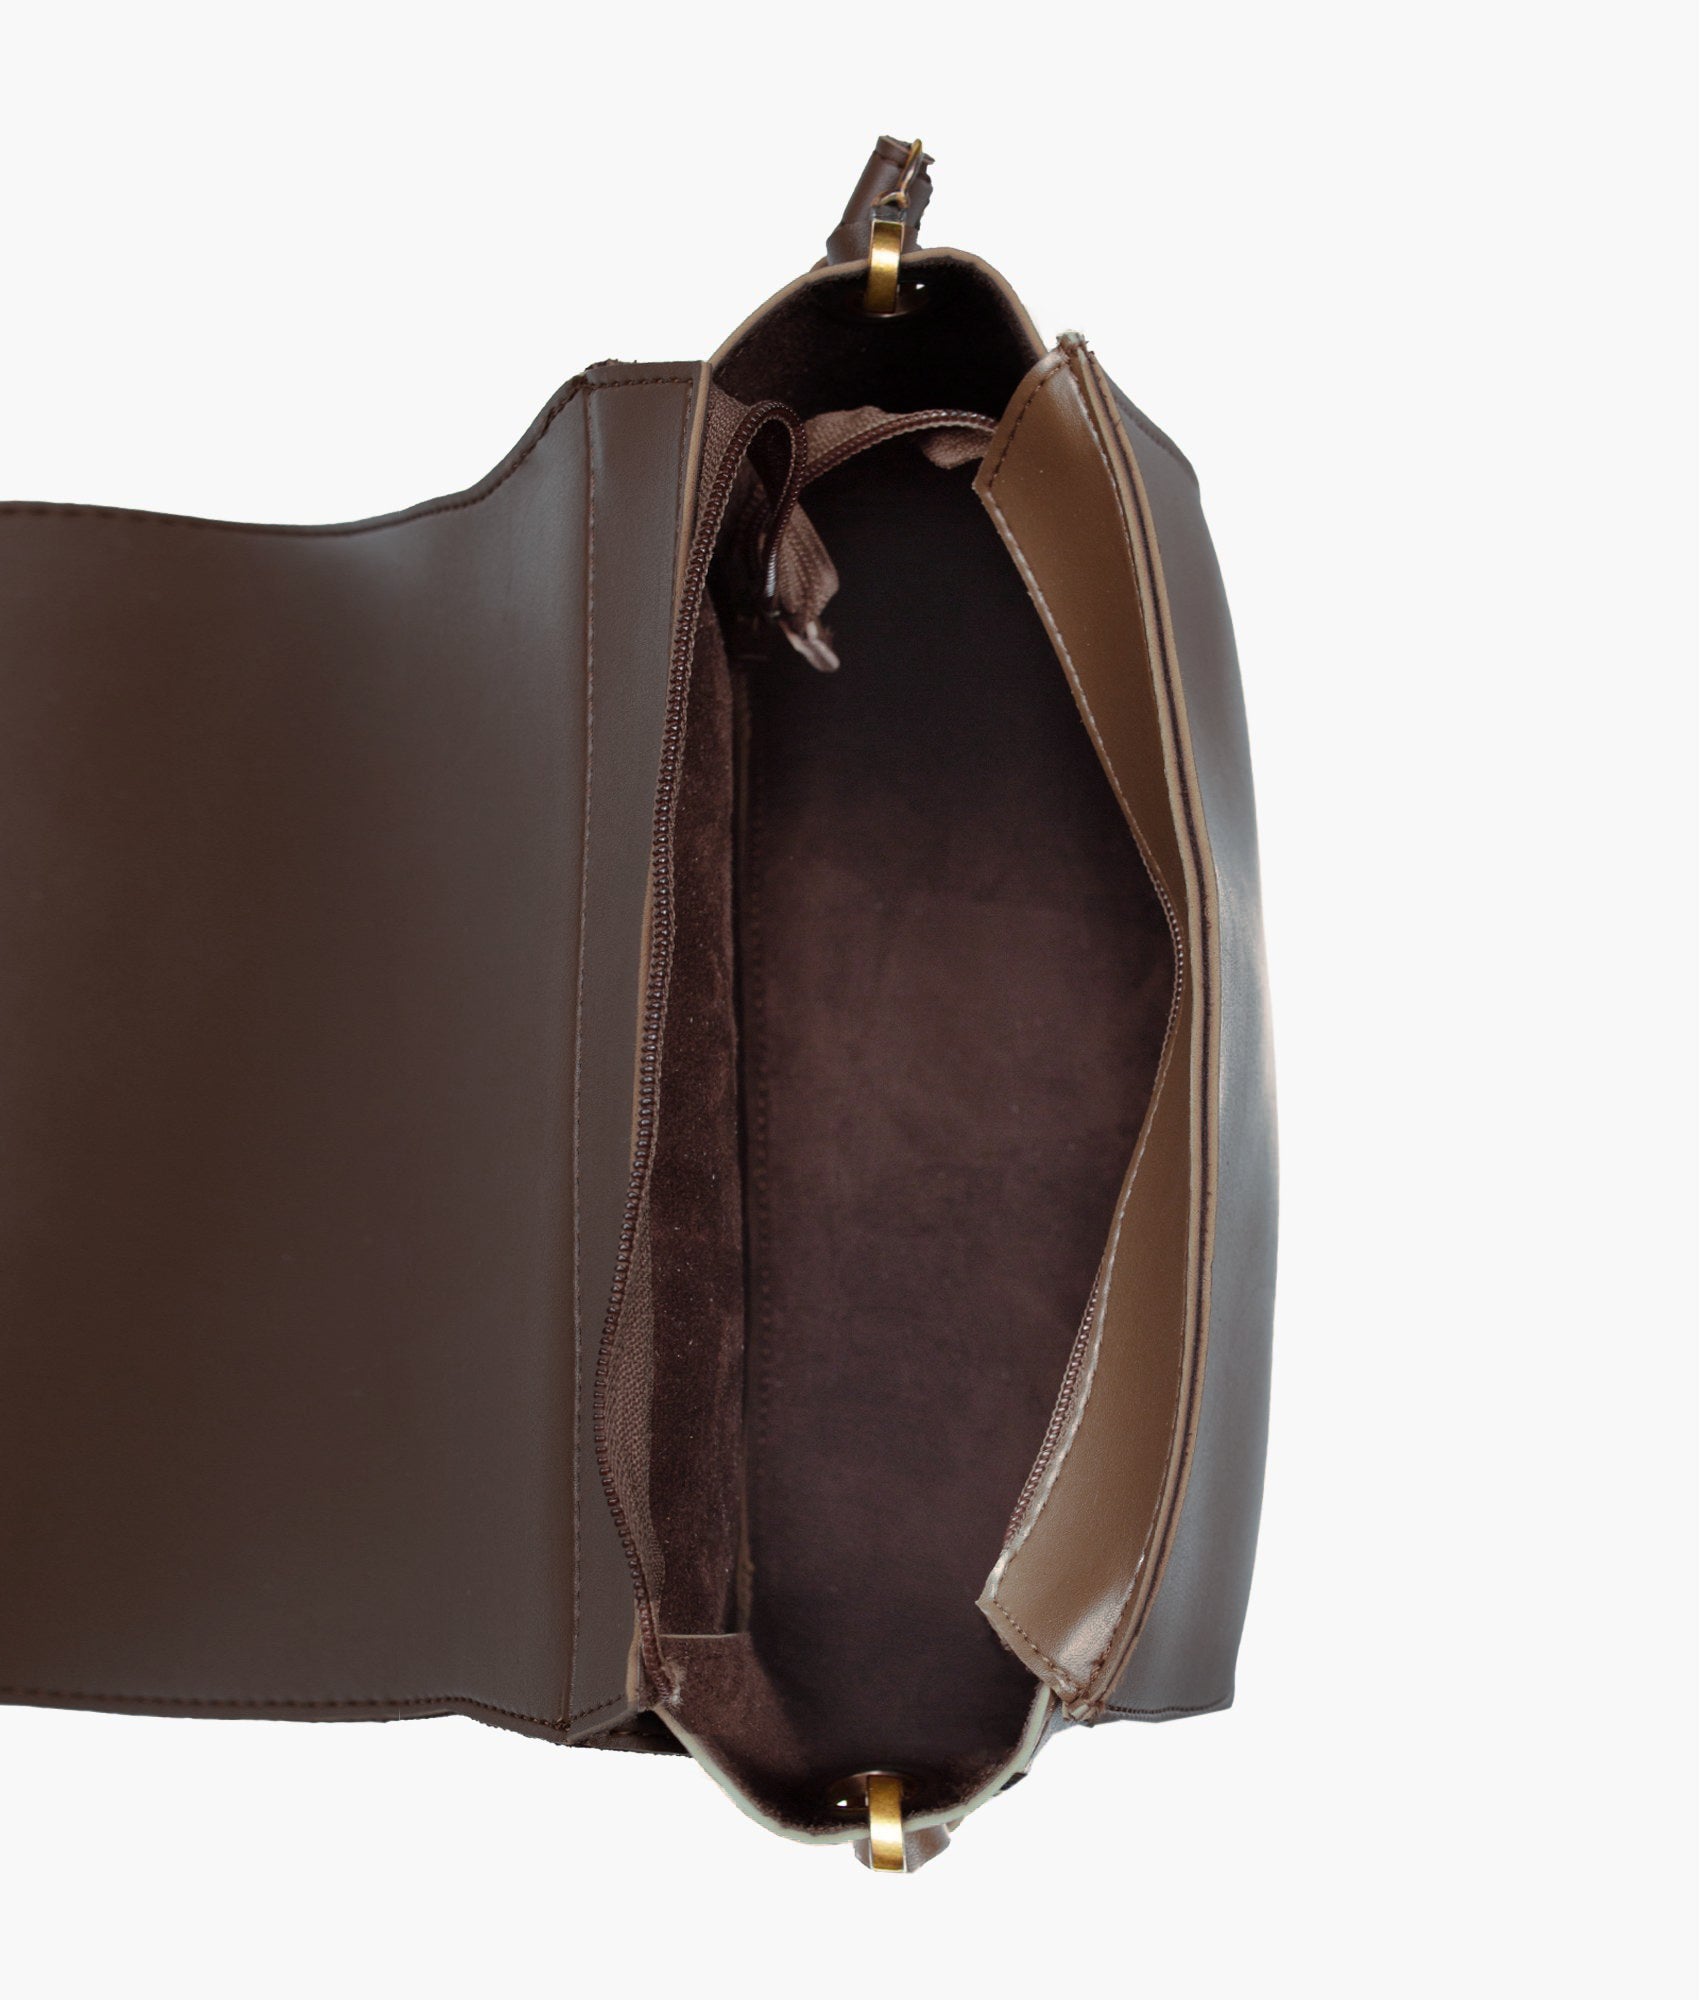 Dark brown foldover saddle bag